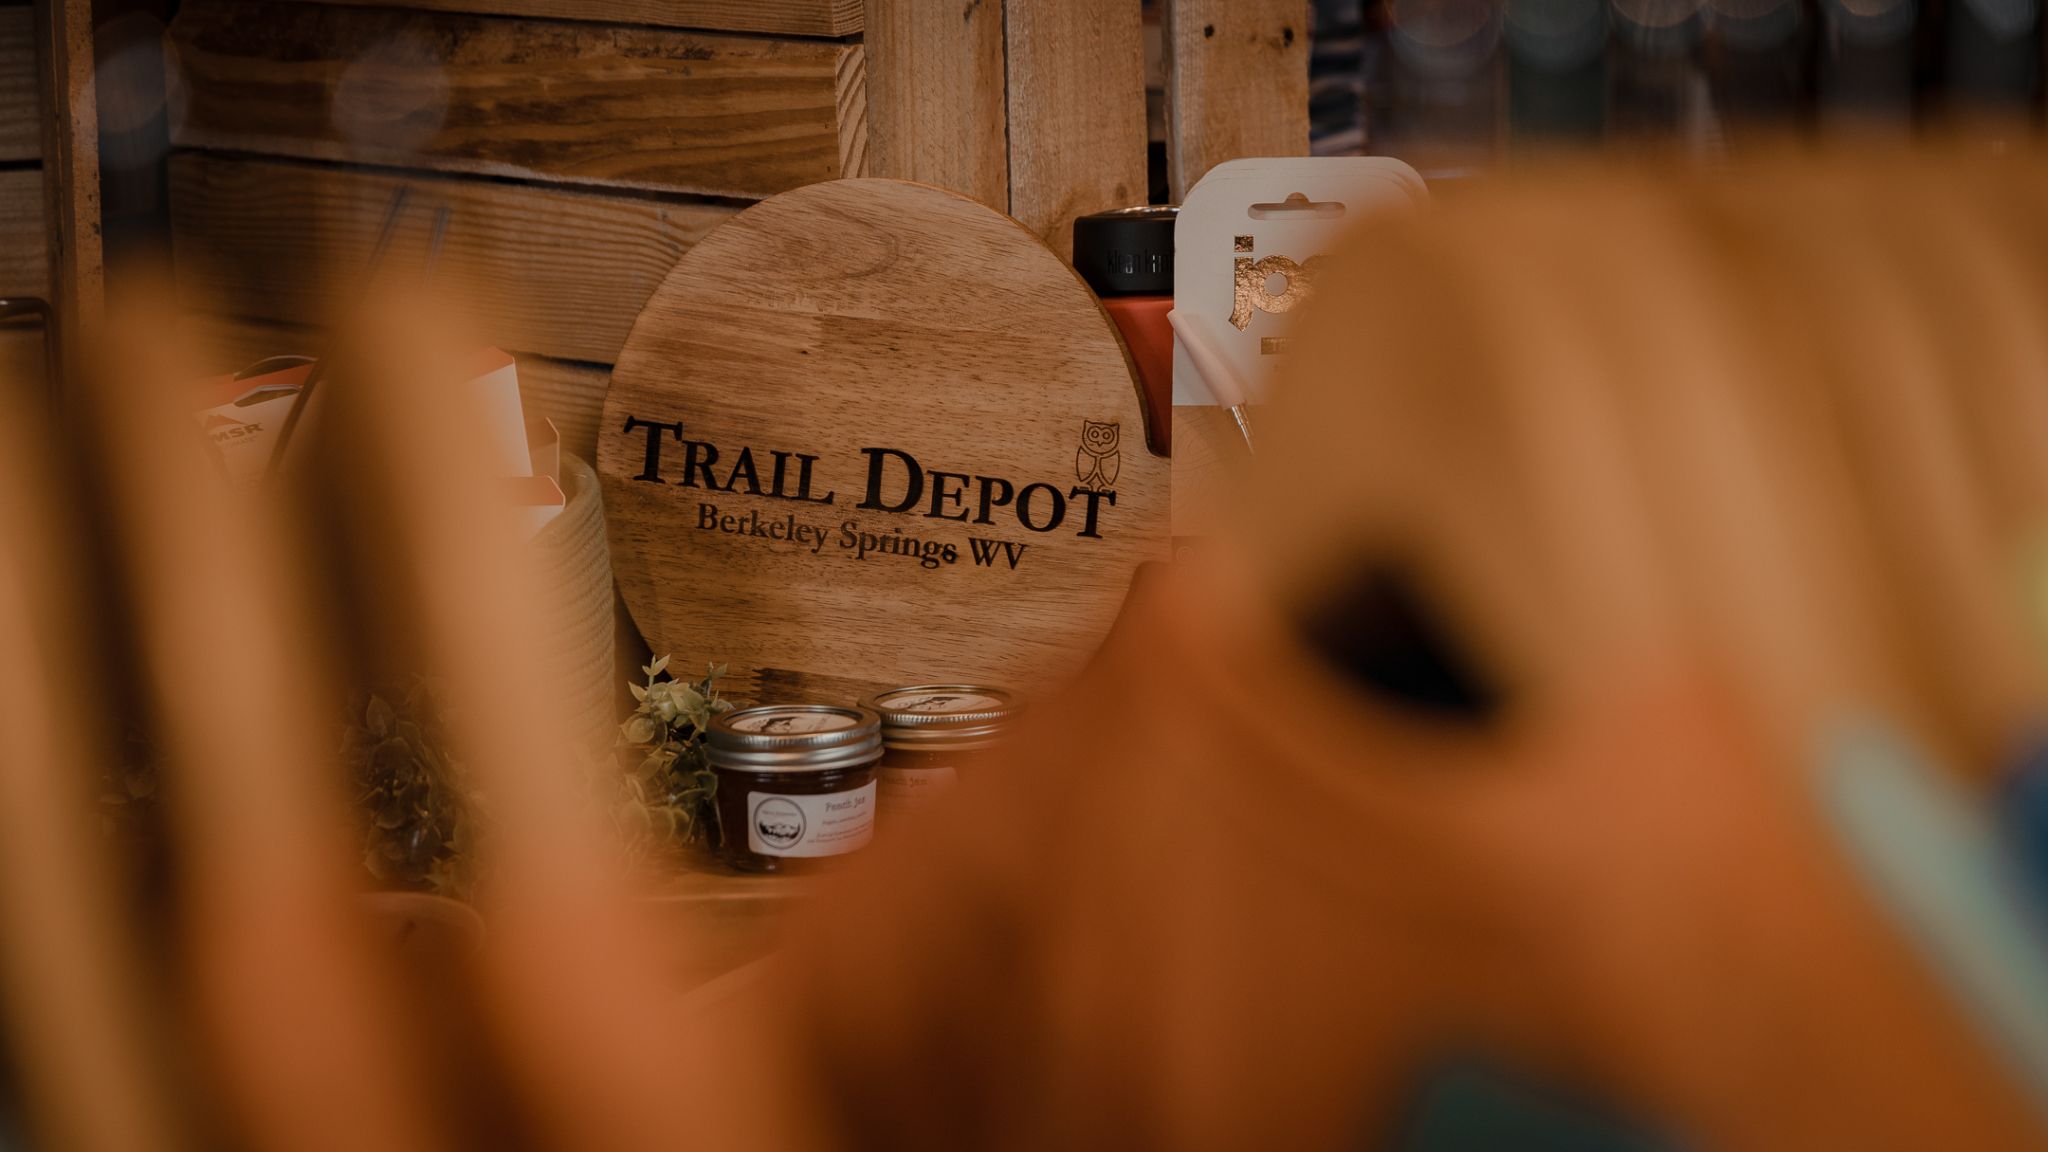 Trail Depot: Berkeley Springs’ First Outdoor Shop